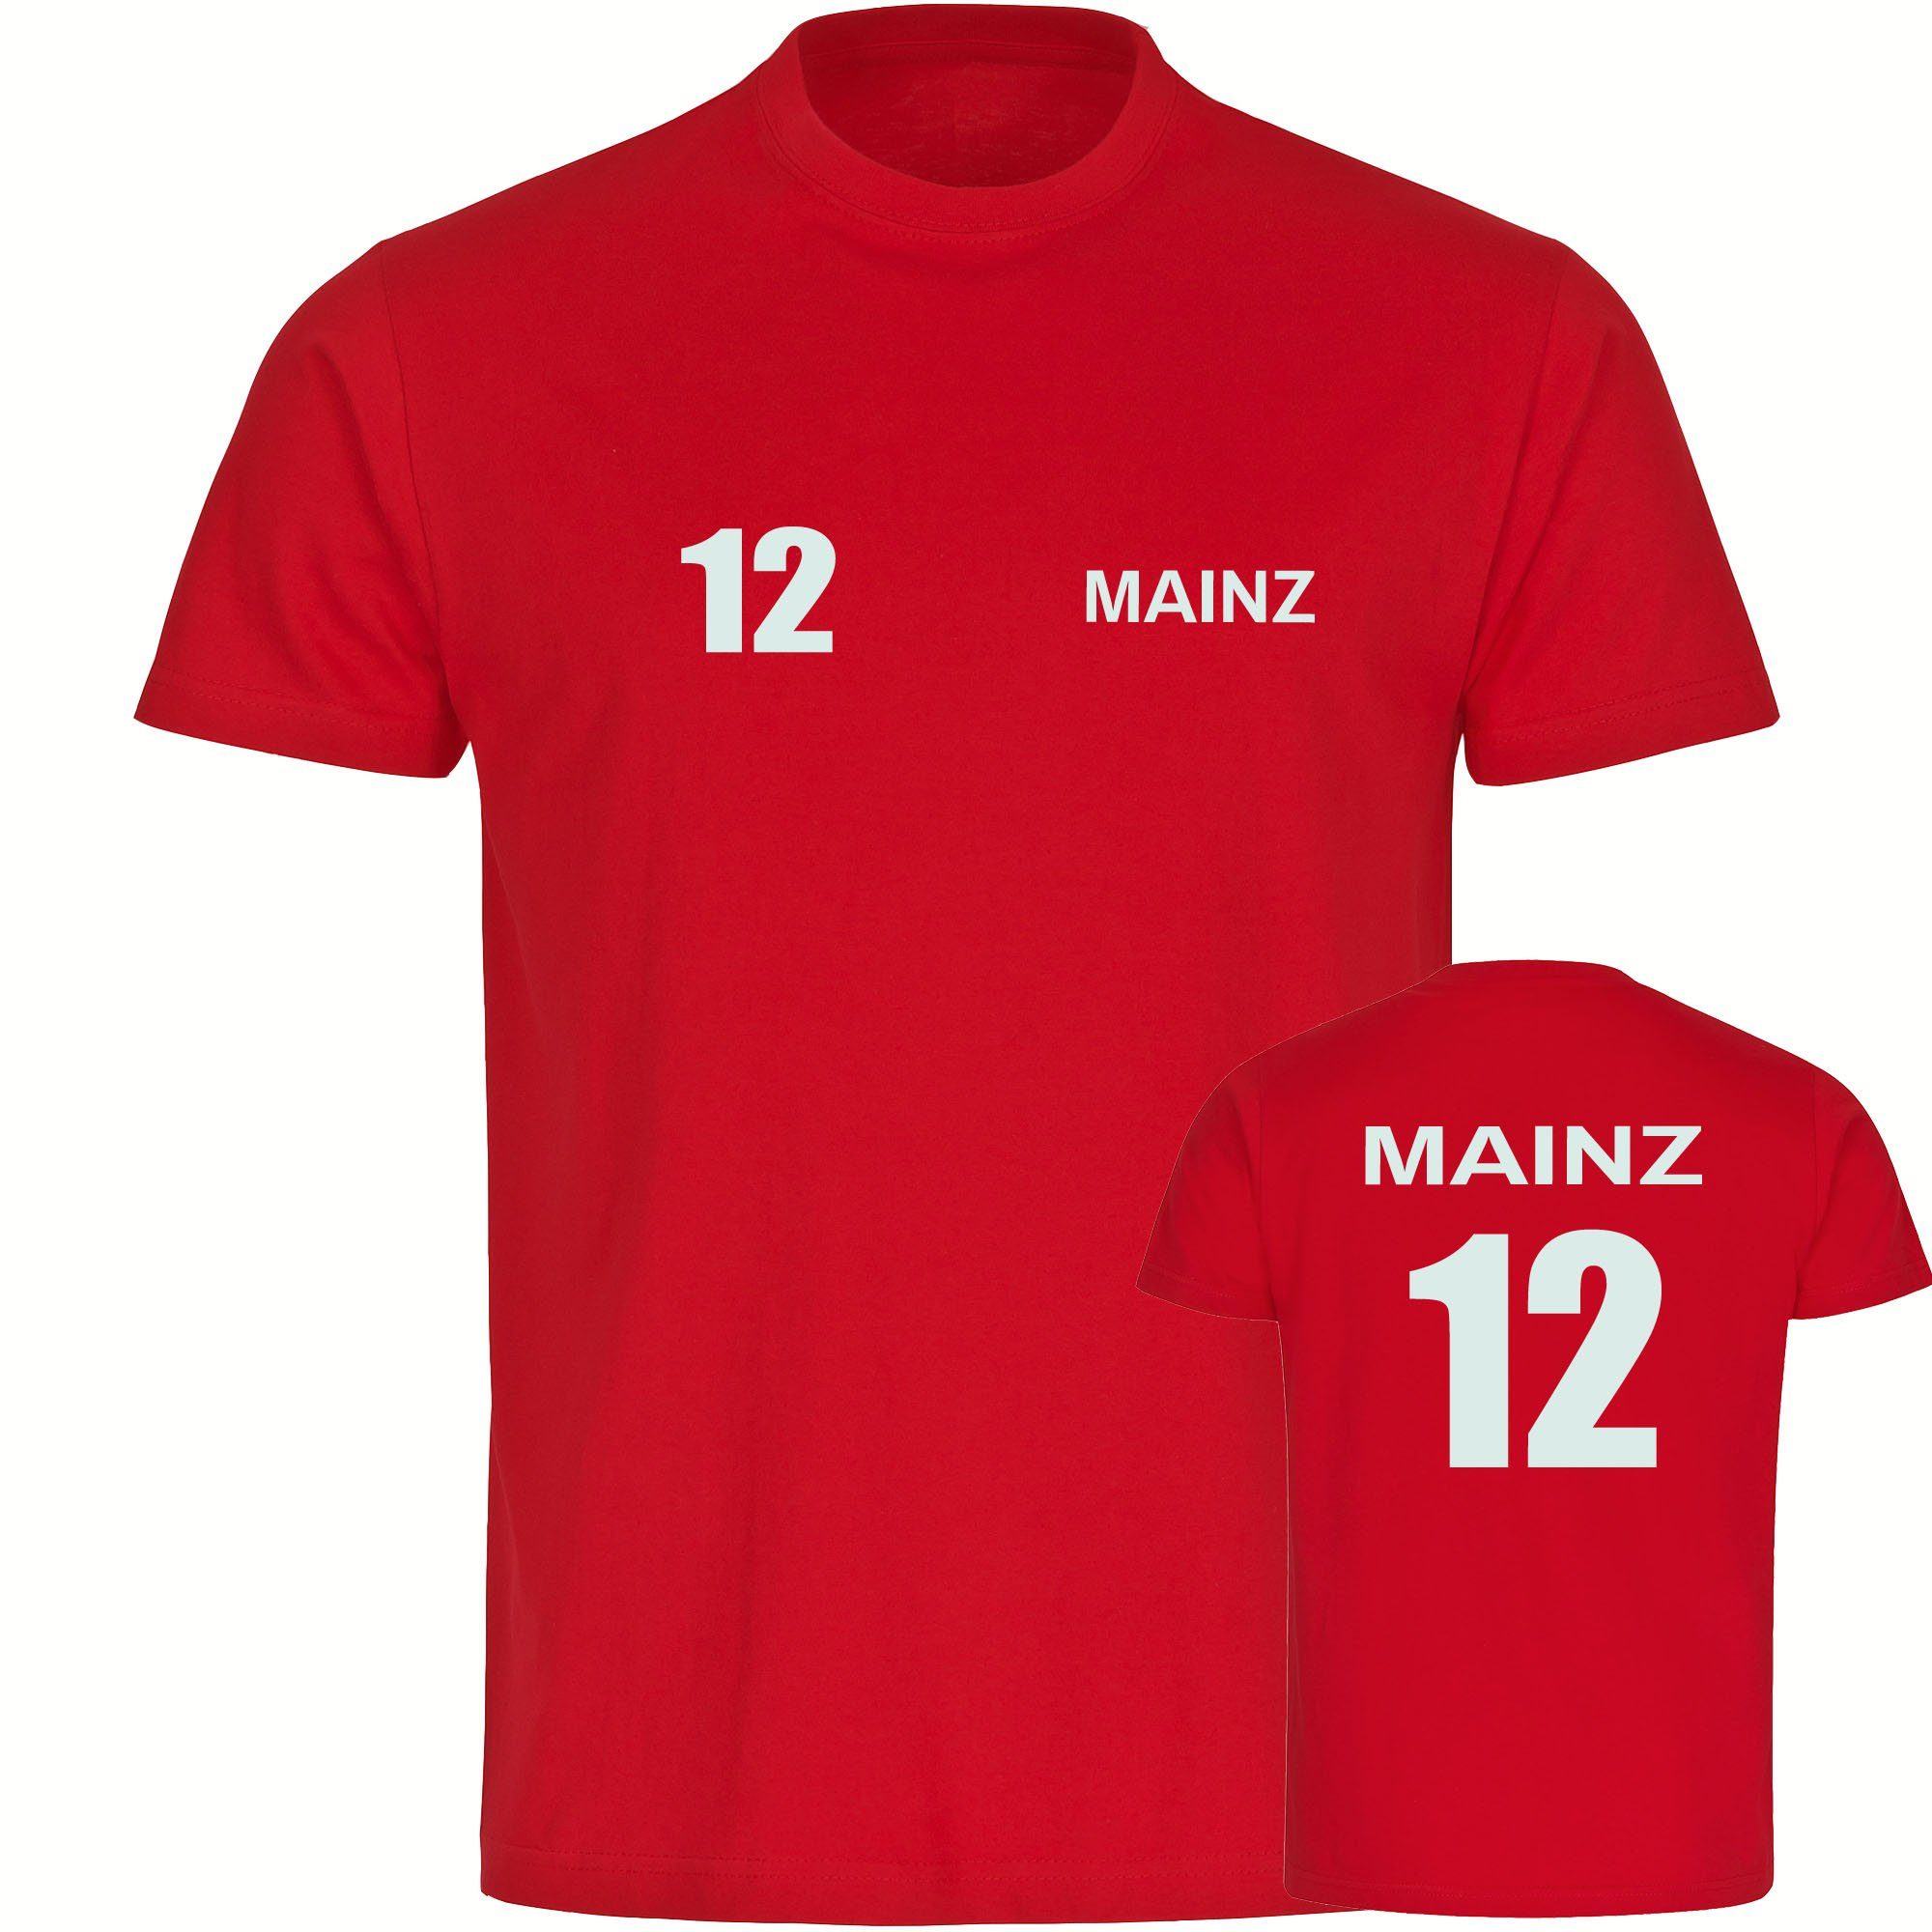 multifanshop T-Shirt Herren Mainz - Trikot 12 - Männer